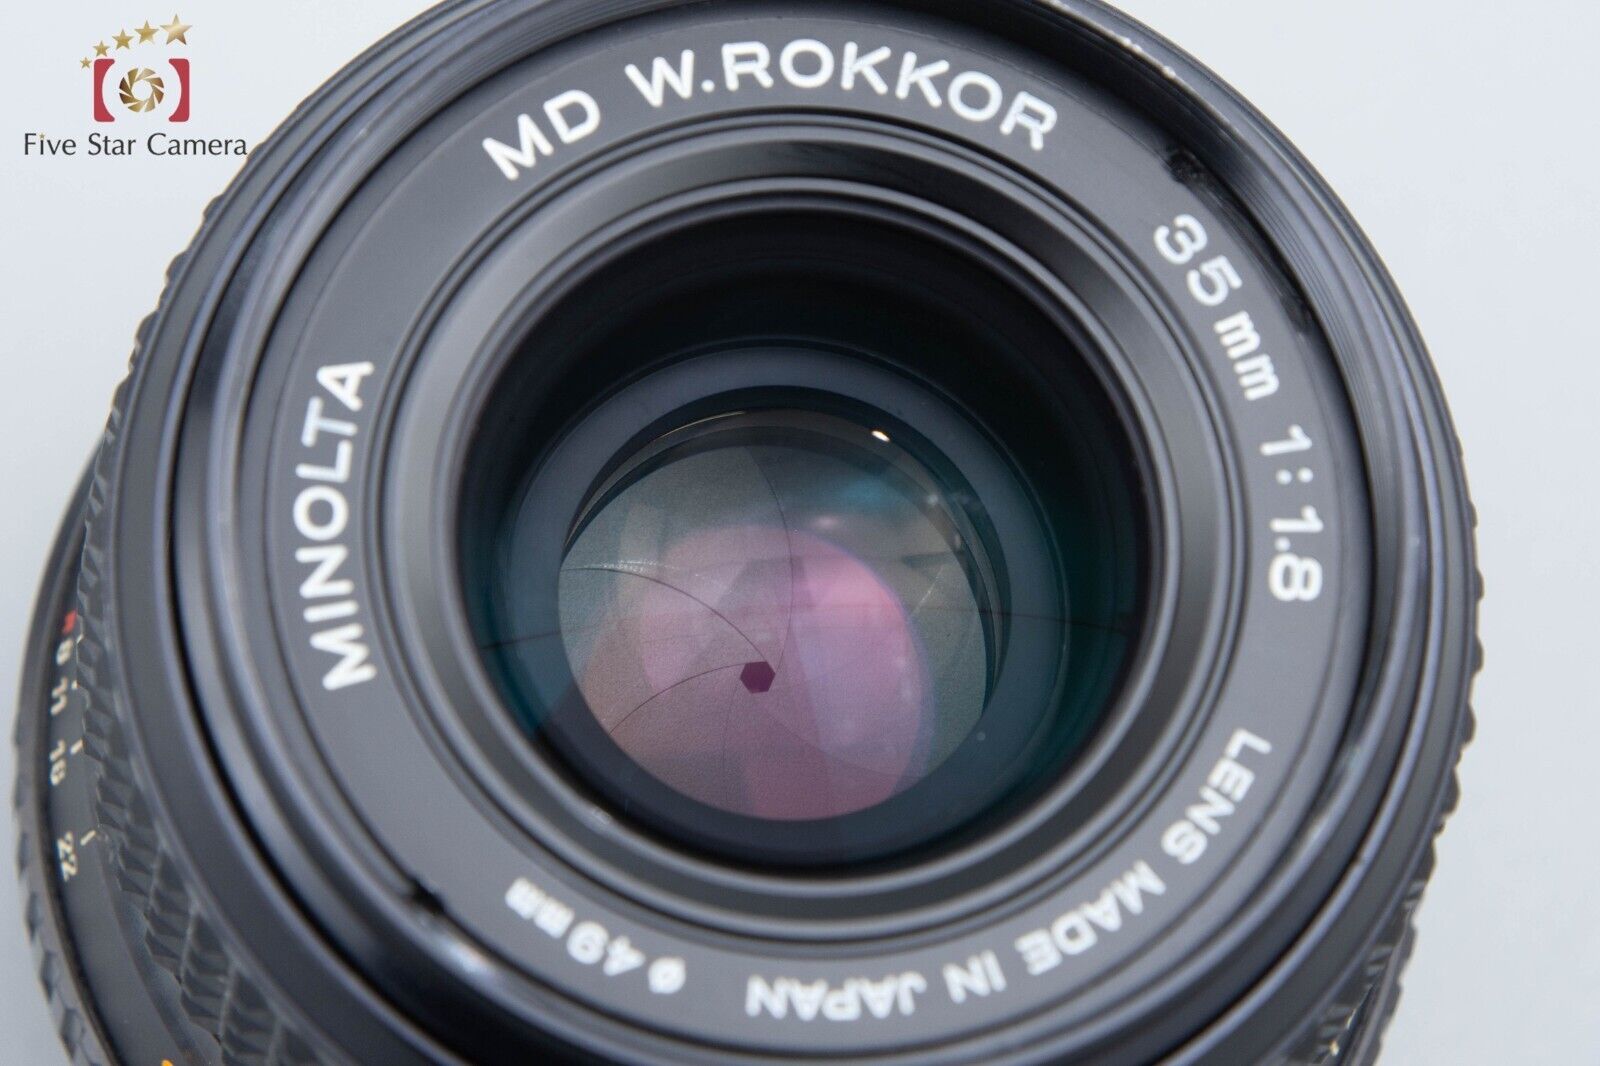 Minolta MD W.ROKKOR 35mm f/1.8